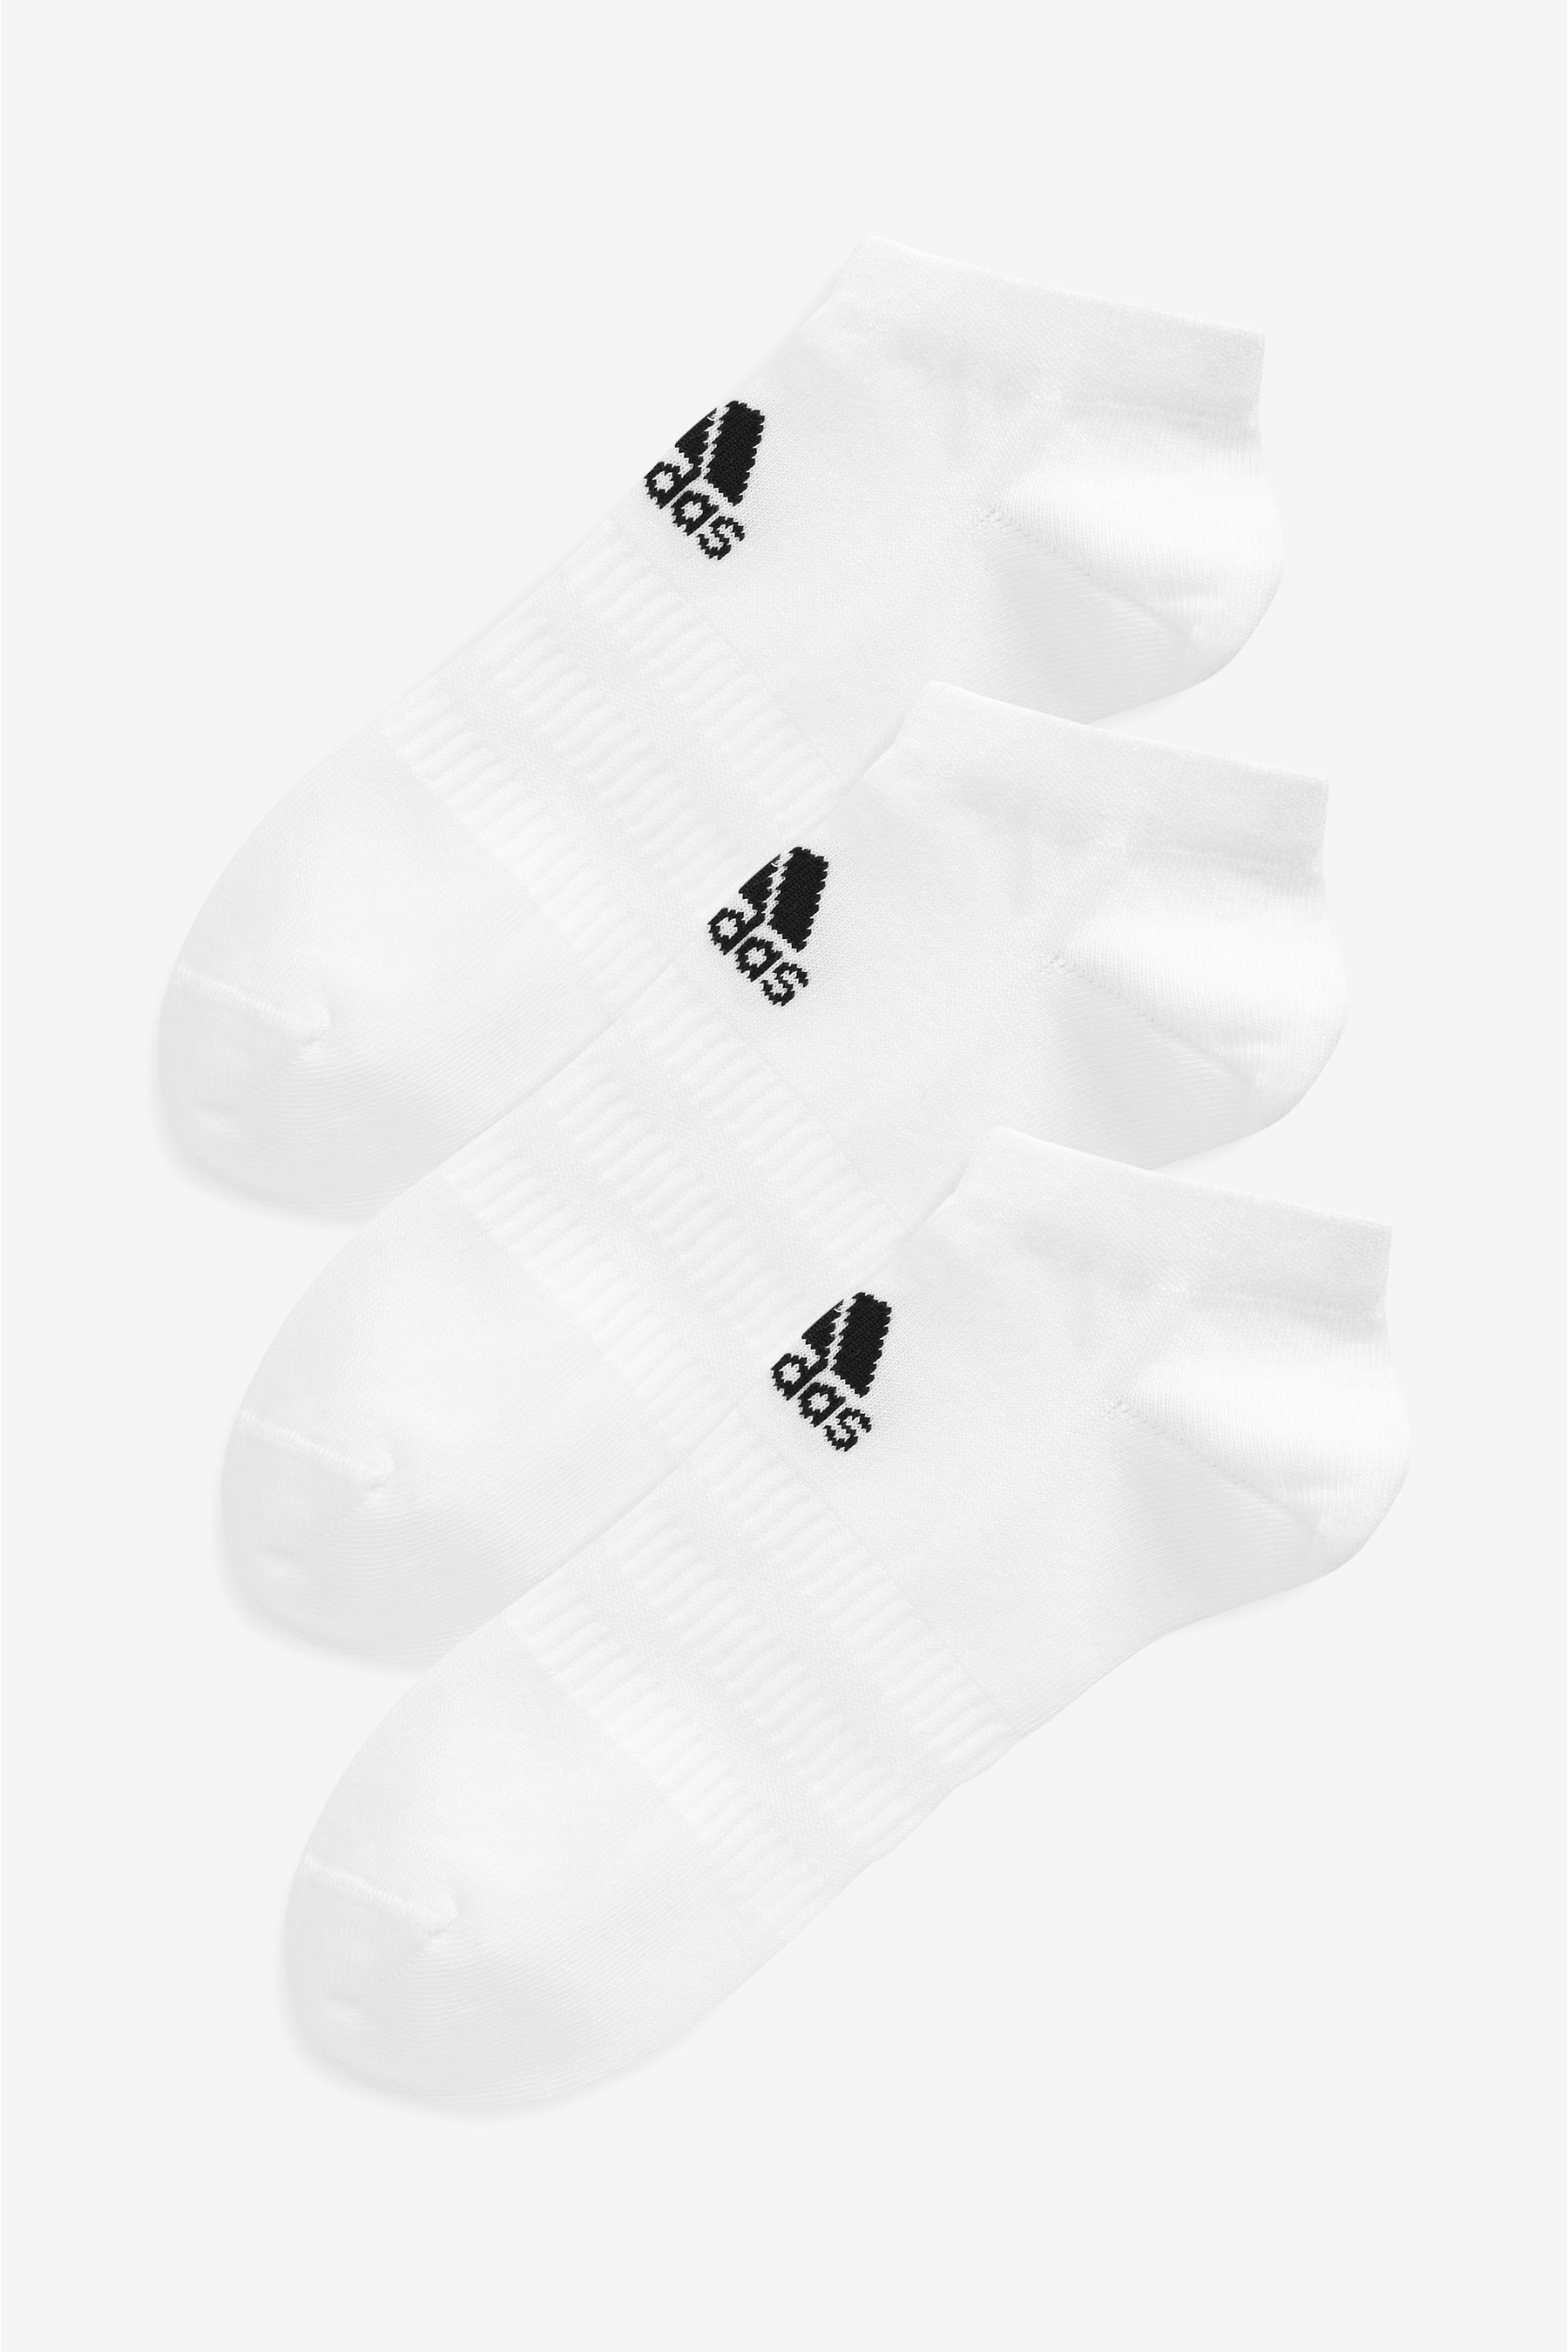 جوارب رياضية بيضاء منخفضة للكبار من Adidas 3 أزواج